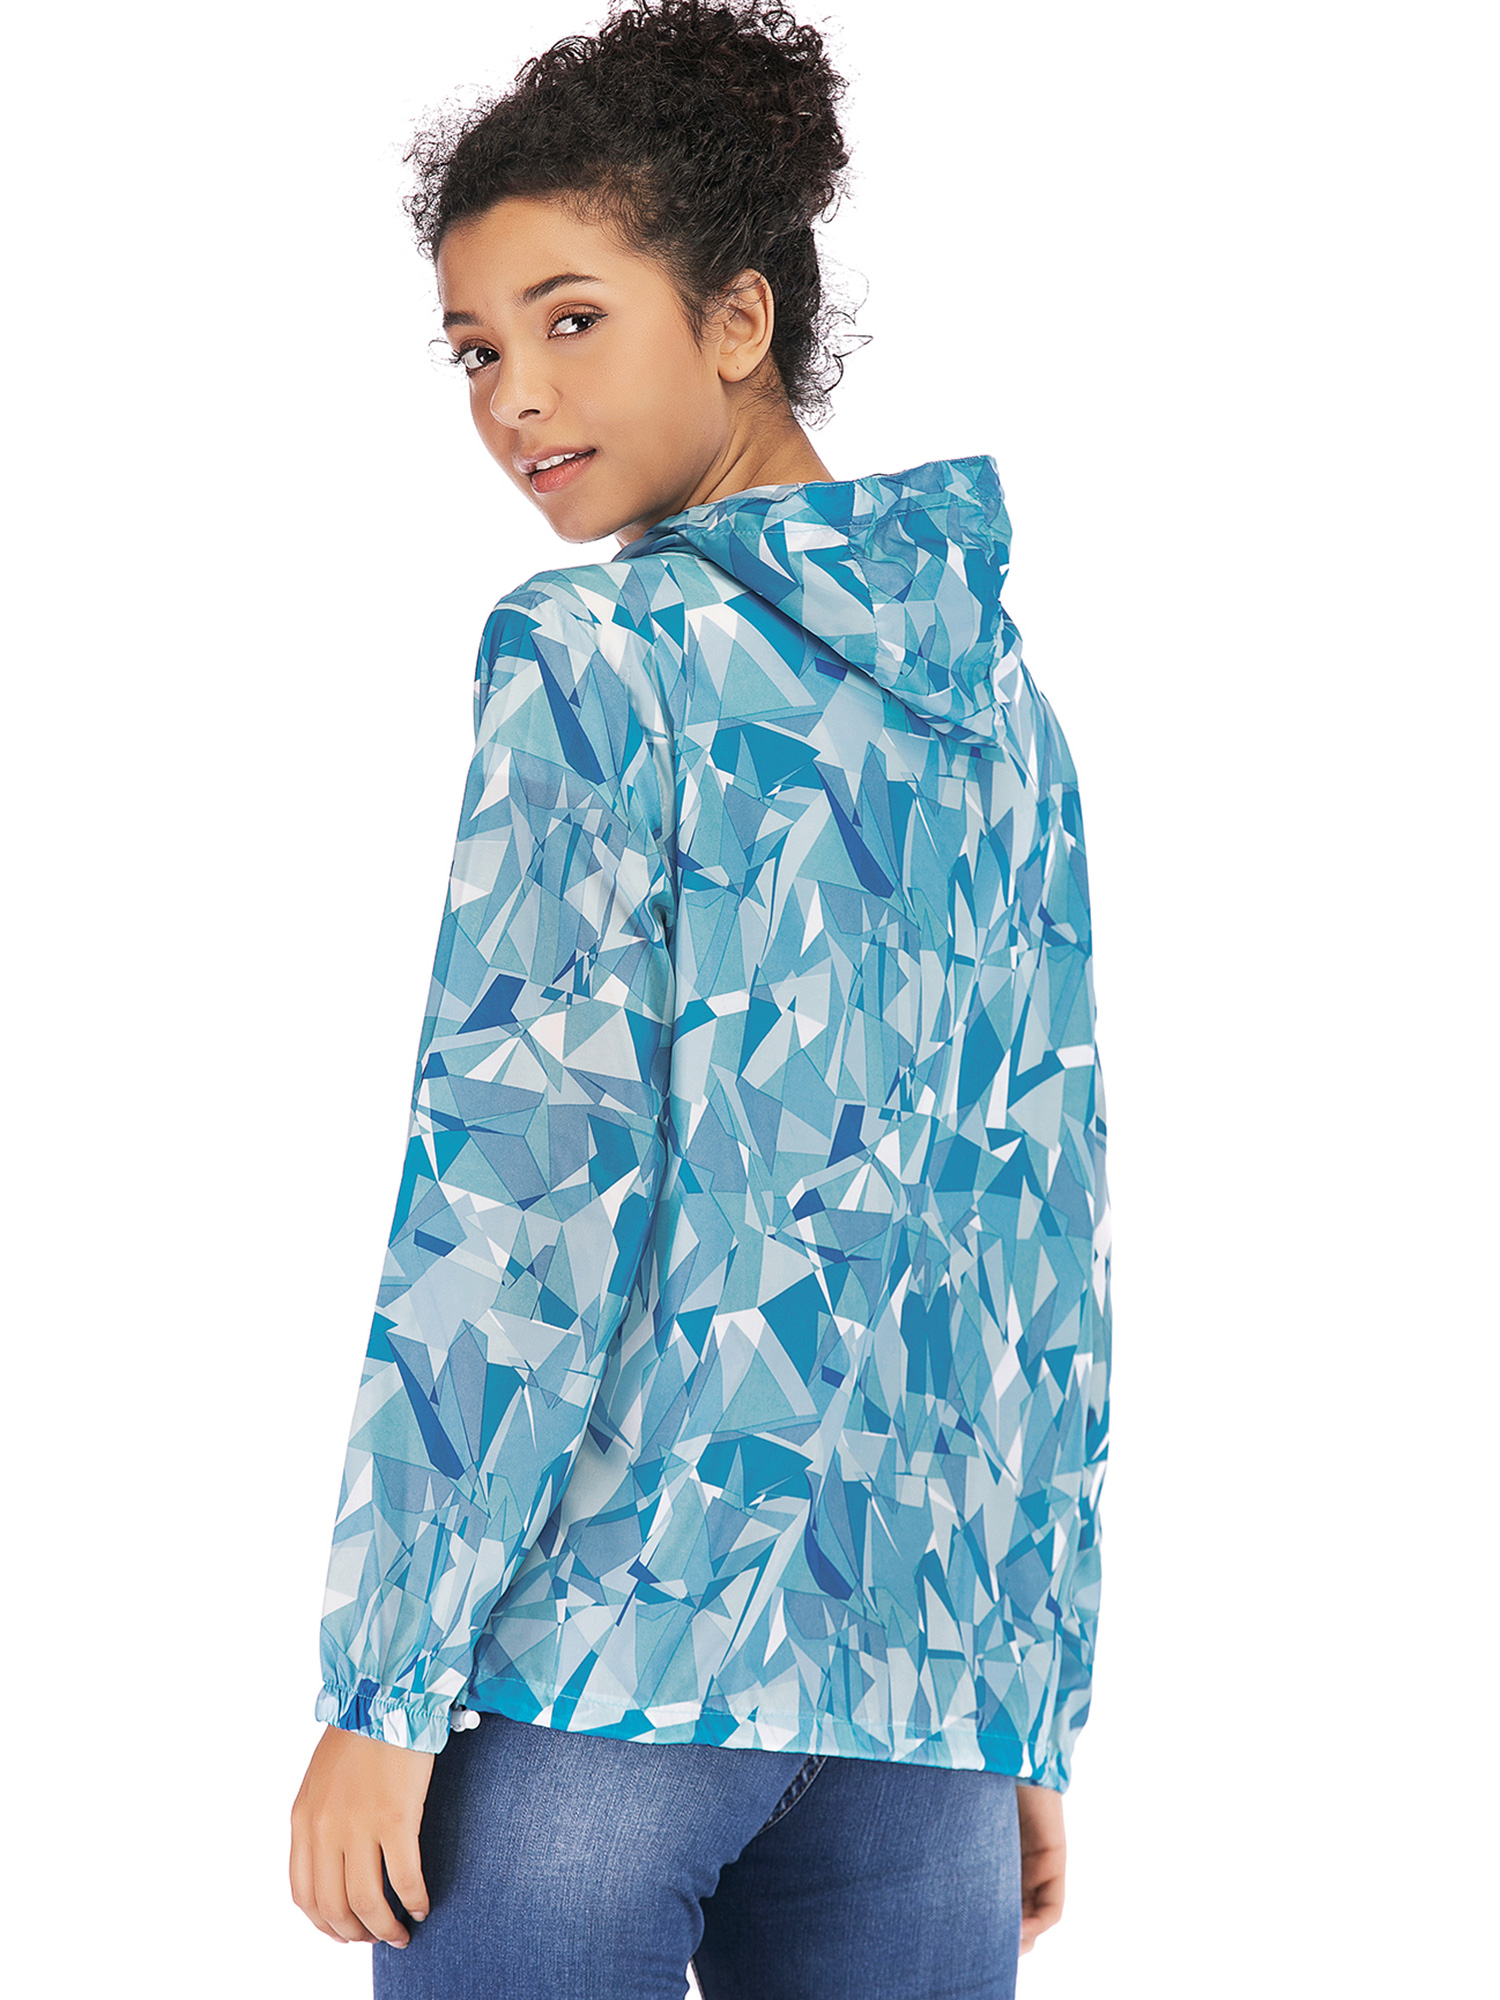 SAYFUT Womens Waterproof Stylish Hooded Hiking Raincoat Packable Outdoor Slim Jacket Leisure Full Zip Hoodie Windbreaker Coats - image 5 of 8